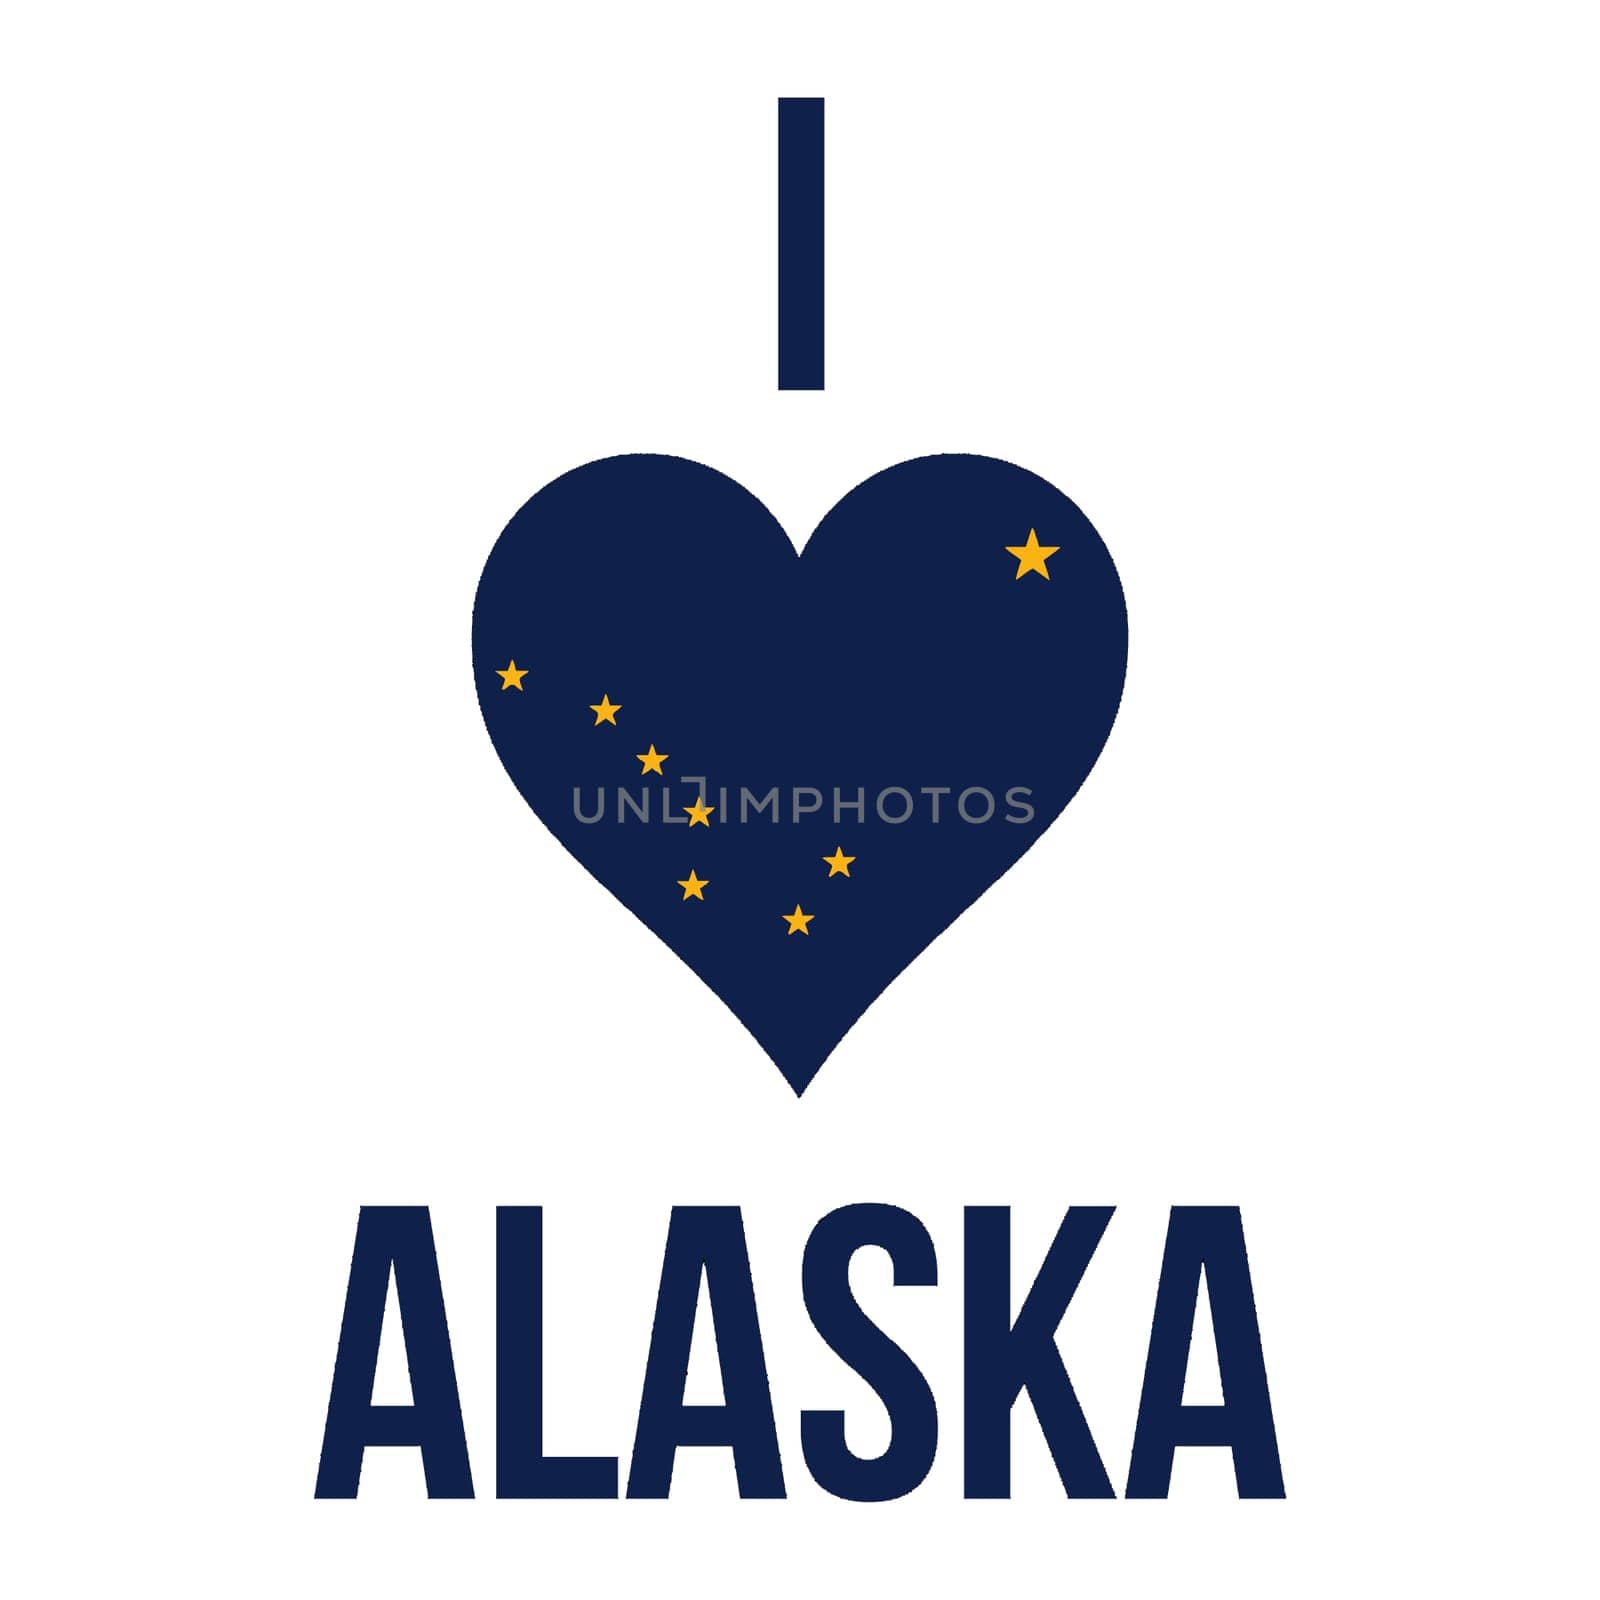 I love Alaska